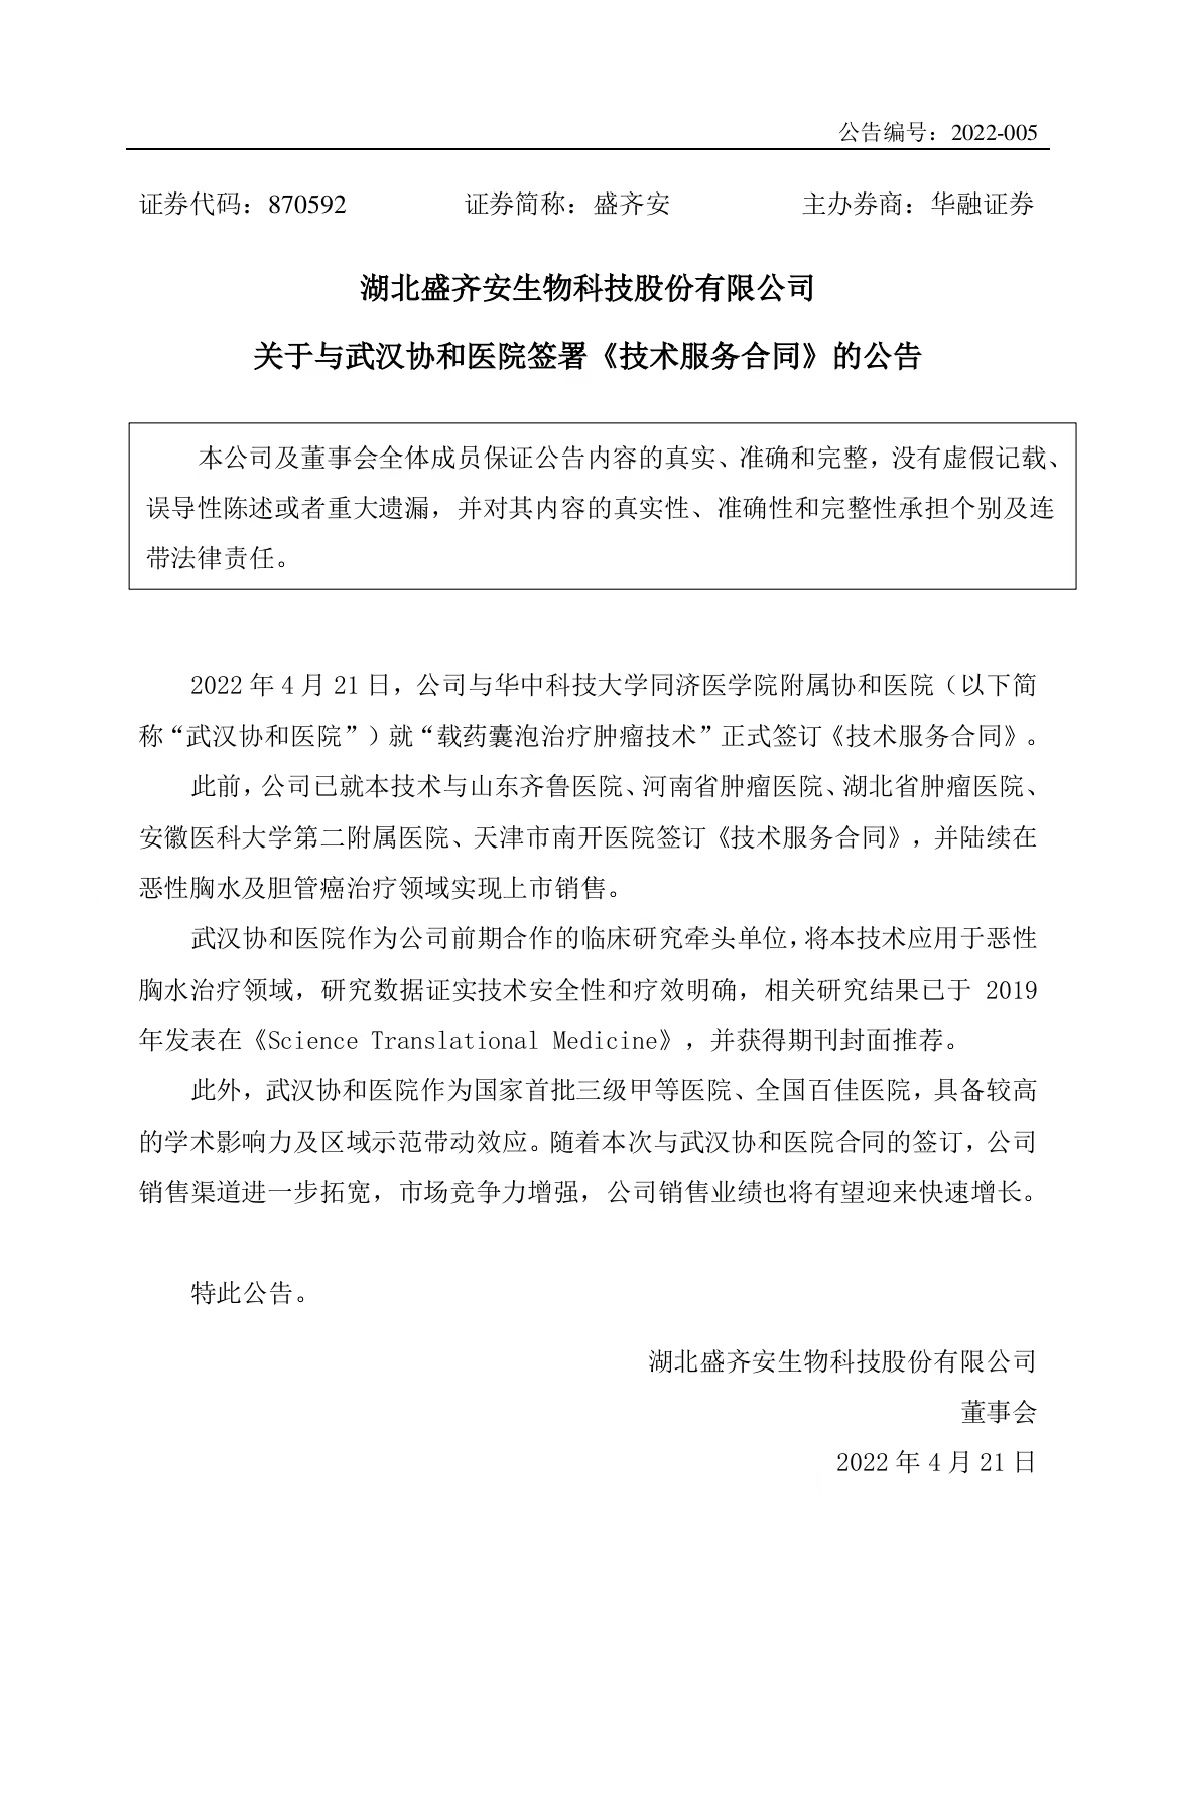 九游会平台怎么样生物科技股份有限公司关于与武汉协和医院签署《技术服务合同》的公告